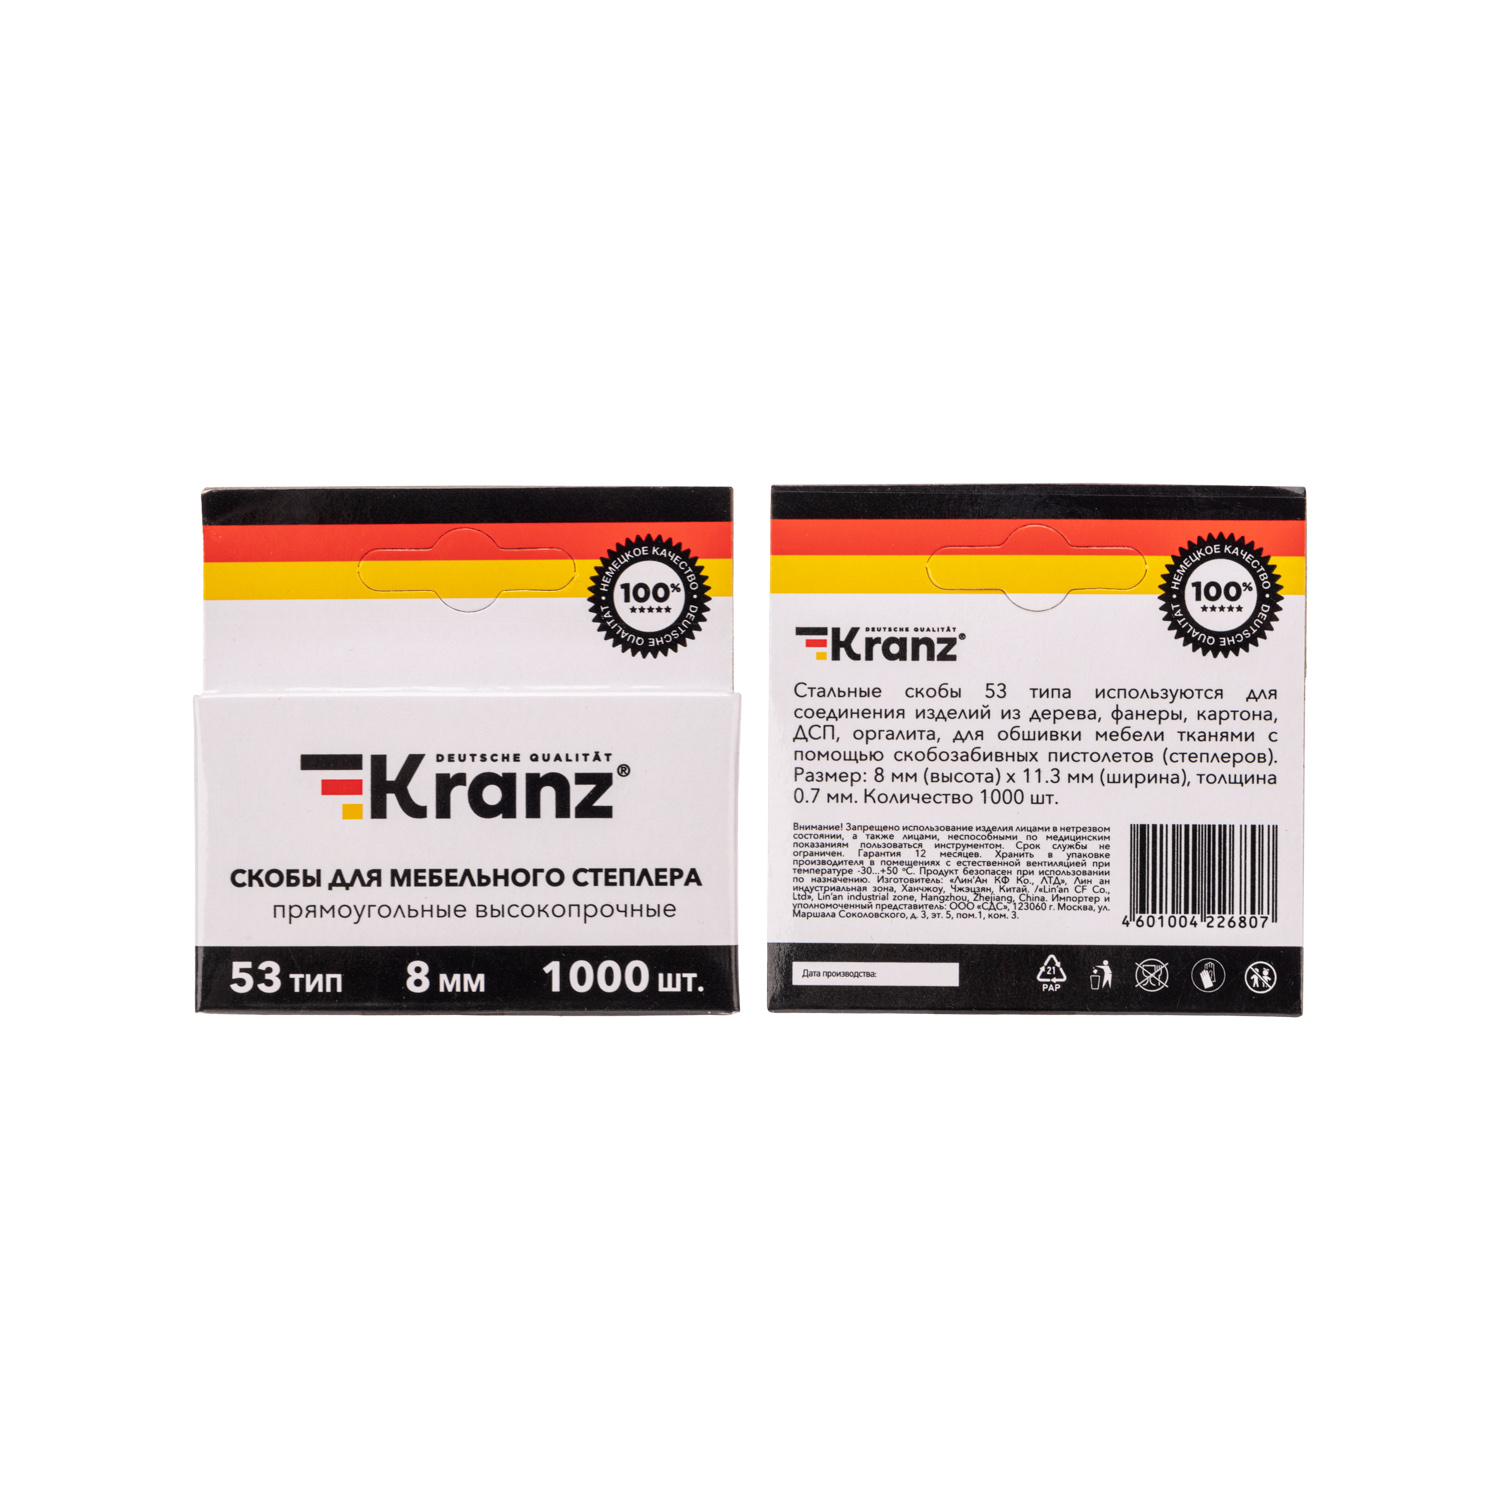 Скобы Kranz для мебельного степлера 8 мм тип 53 1000 штук в упаковке - фото 3